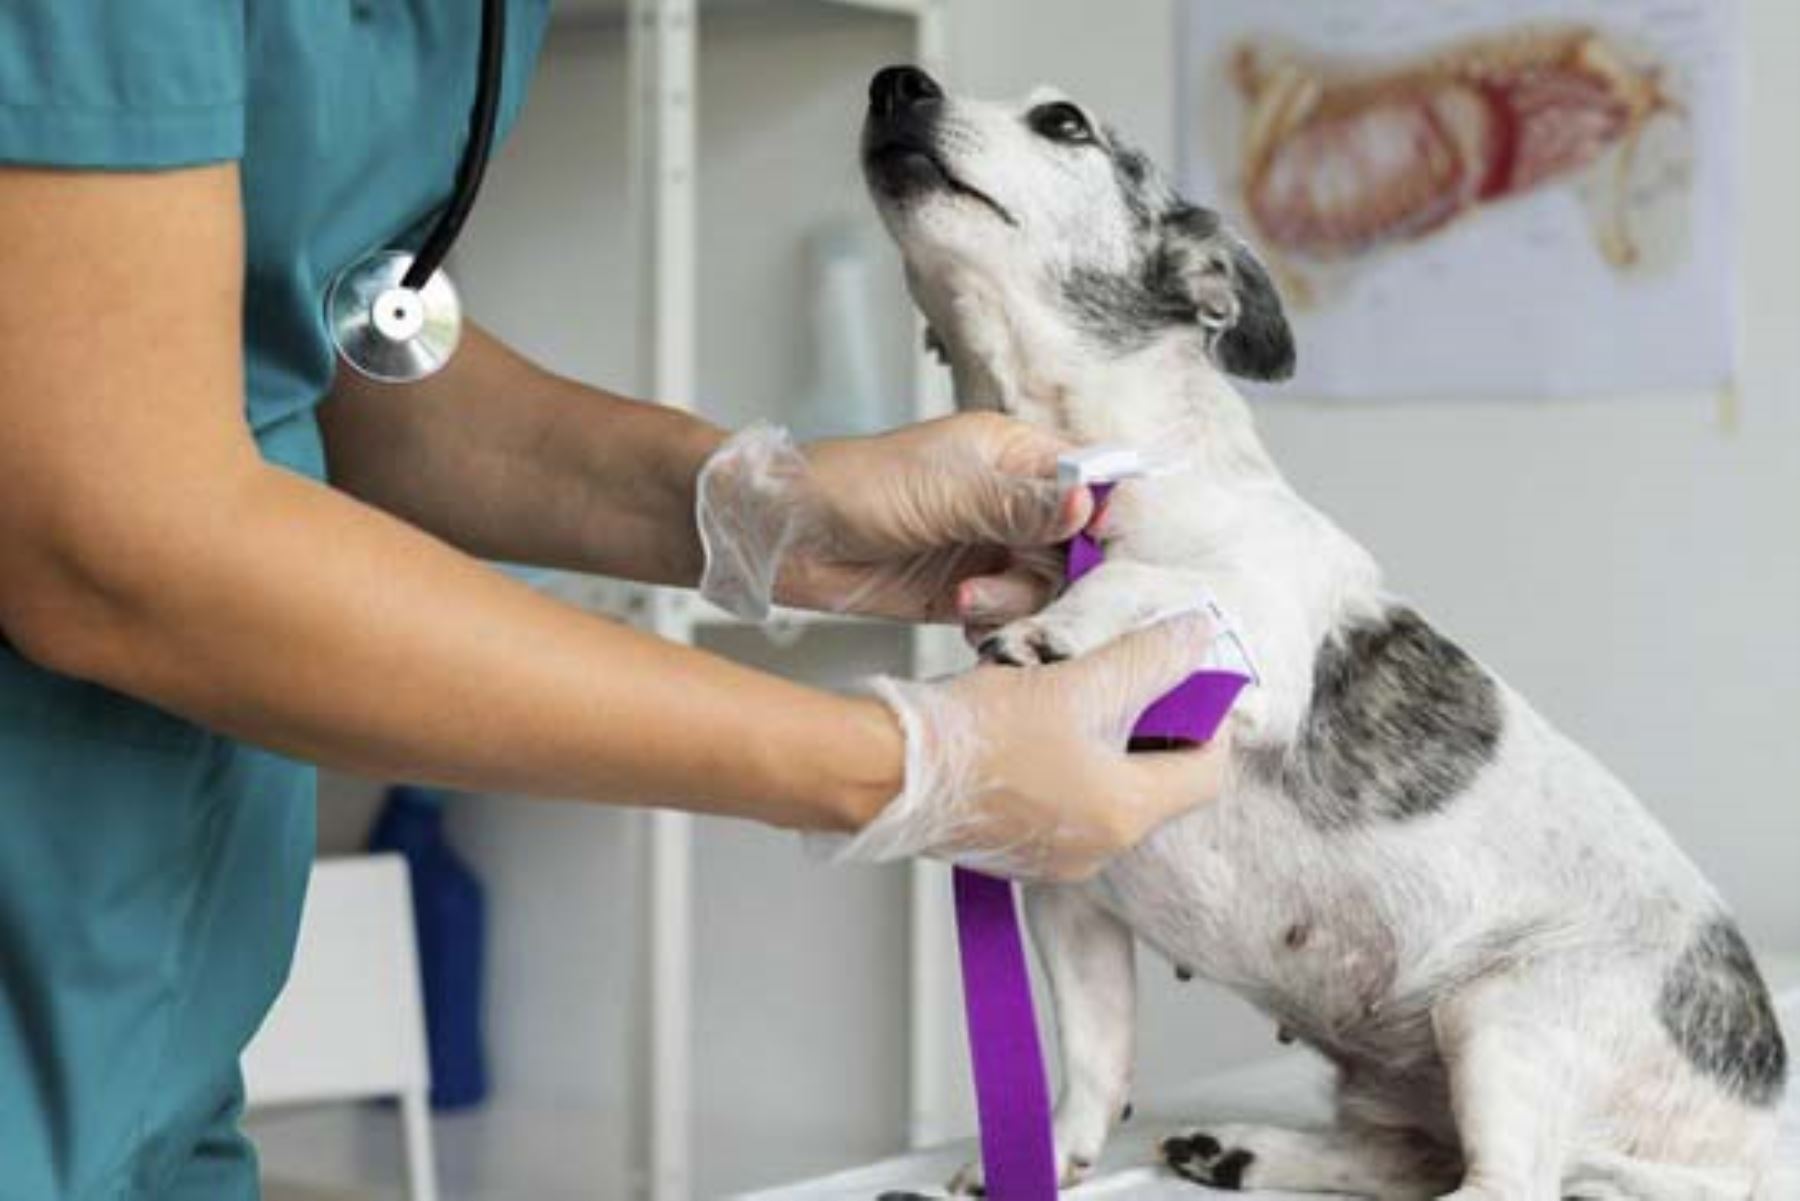 Algunas de las infecciones más comunes que pueden transmitir las mascotas son la rabia, toxoplasmosis, leptospirosis y enfermedad de Lyme, producida por las garrapatas.